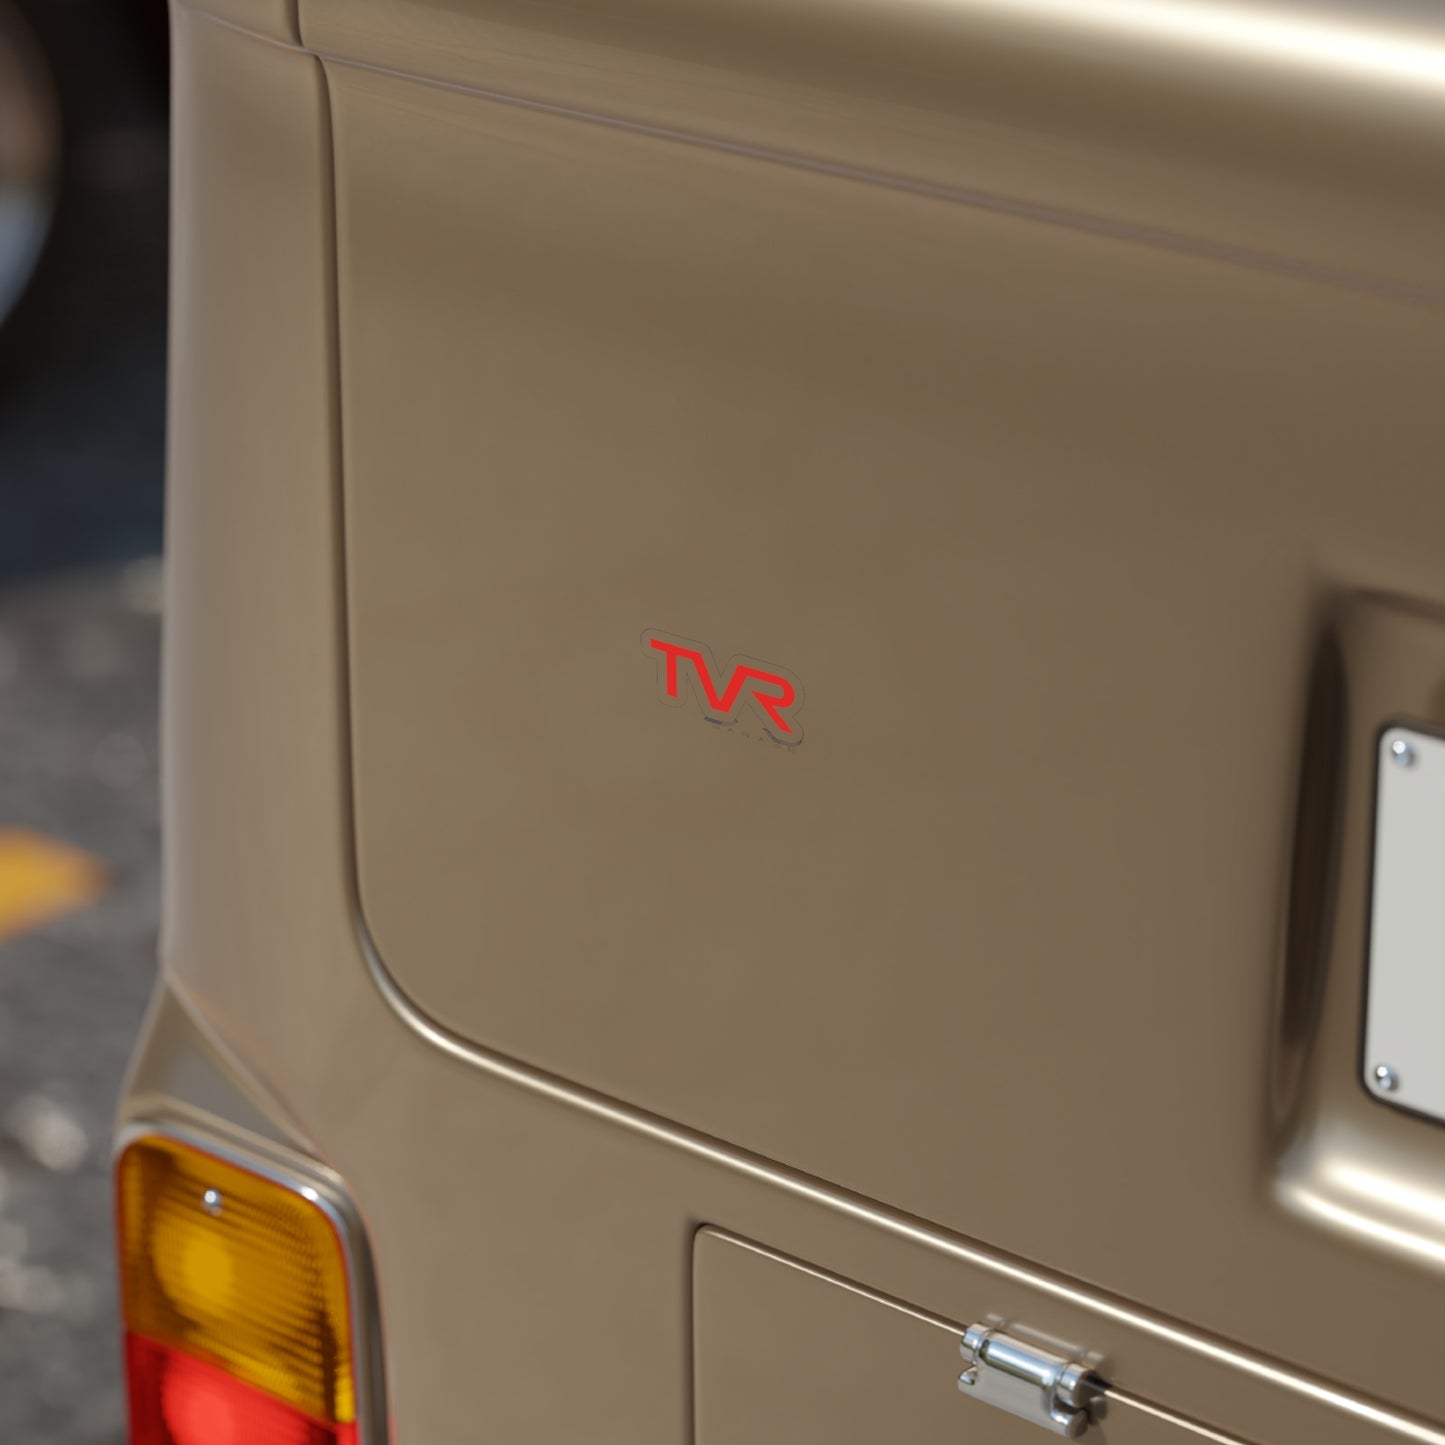 TVR Garage: Transparent Outdoor Stickers, Die-Cut, 1pc